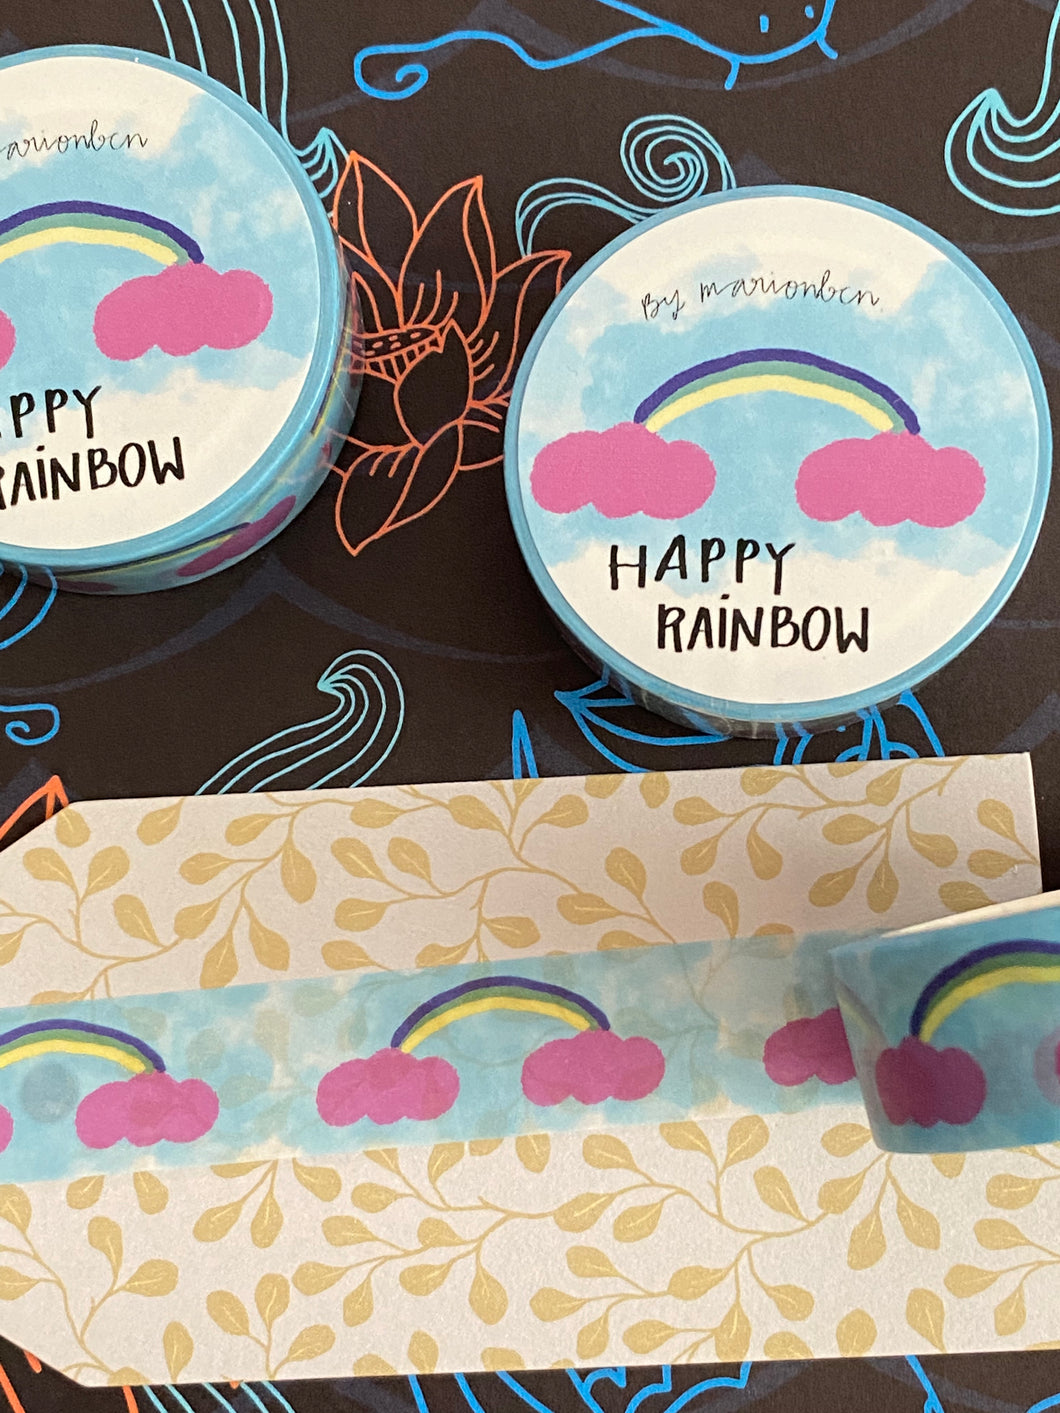 Happy rainbow Washi tape